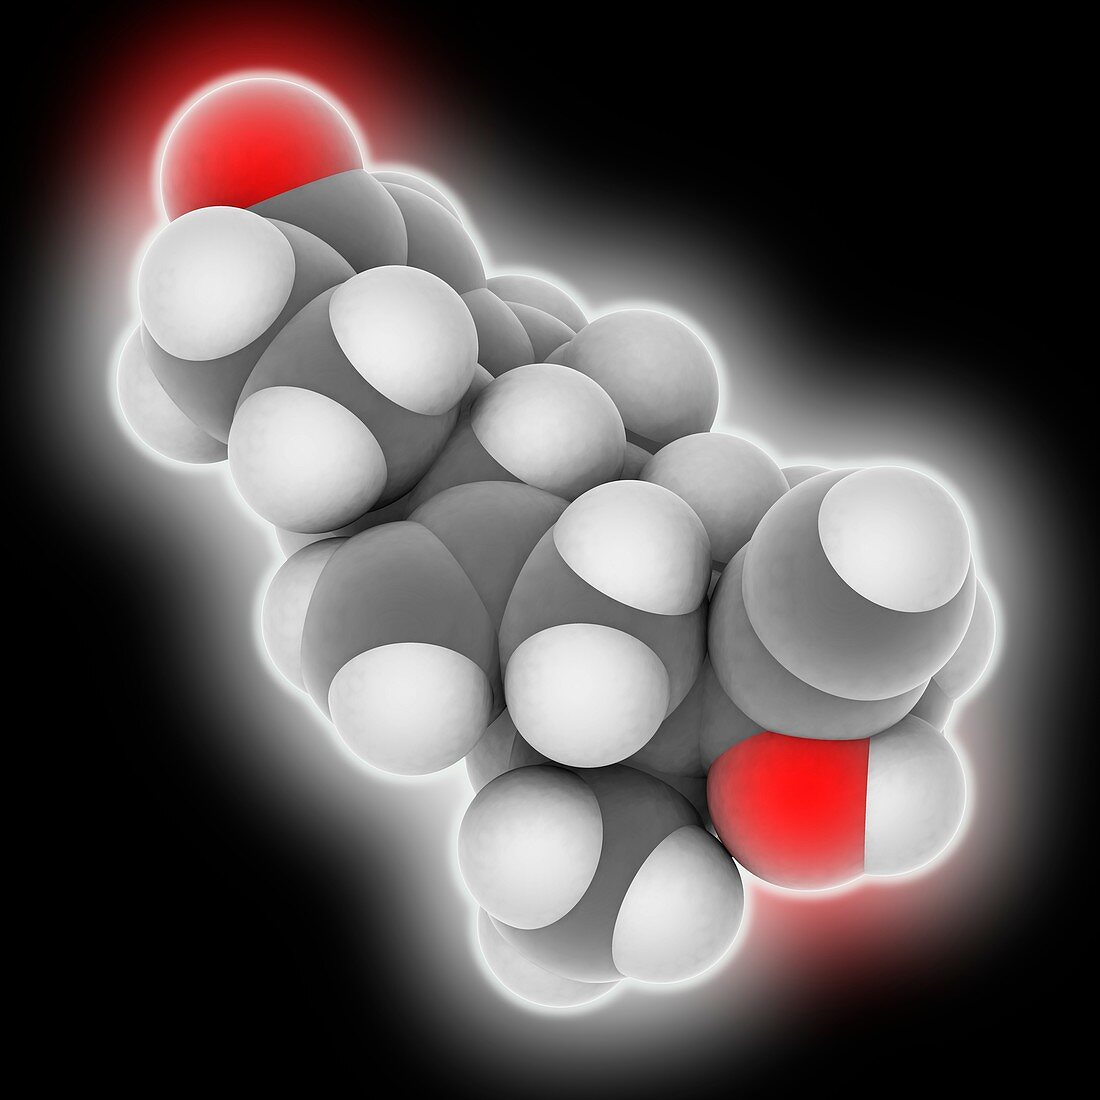 Etonogestrel drug molecule